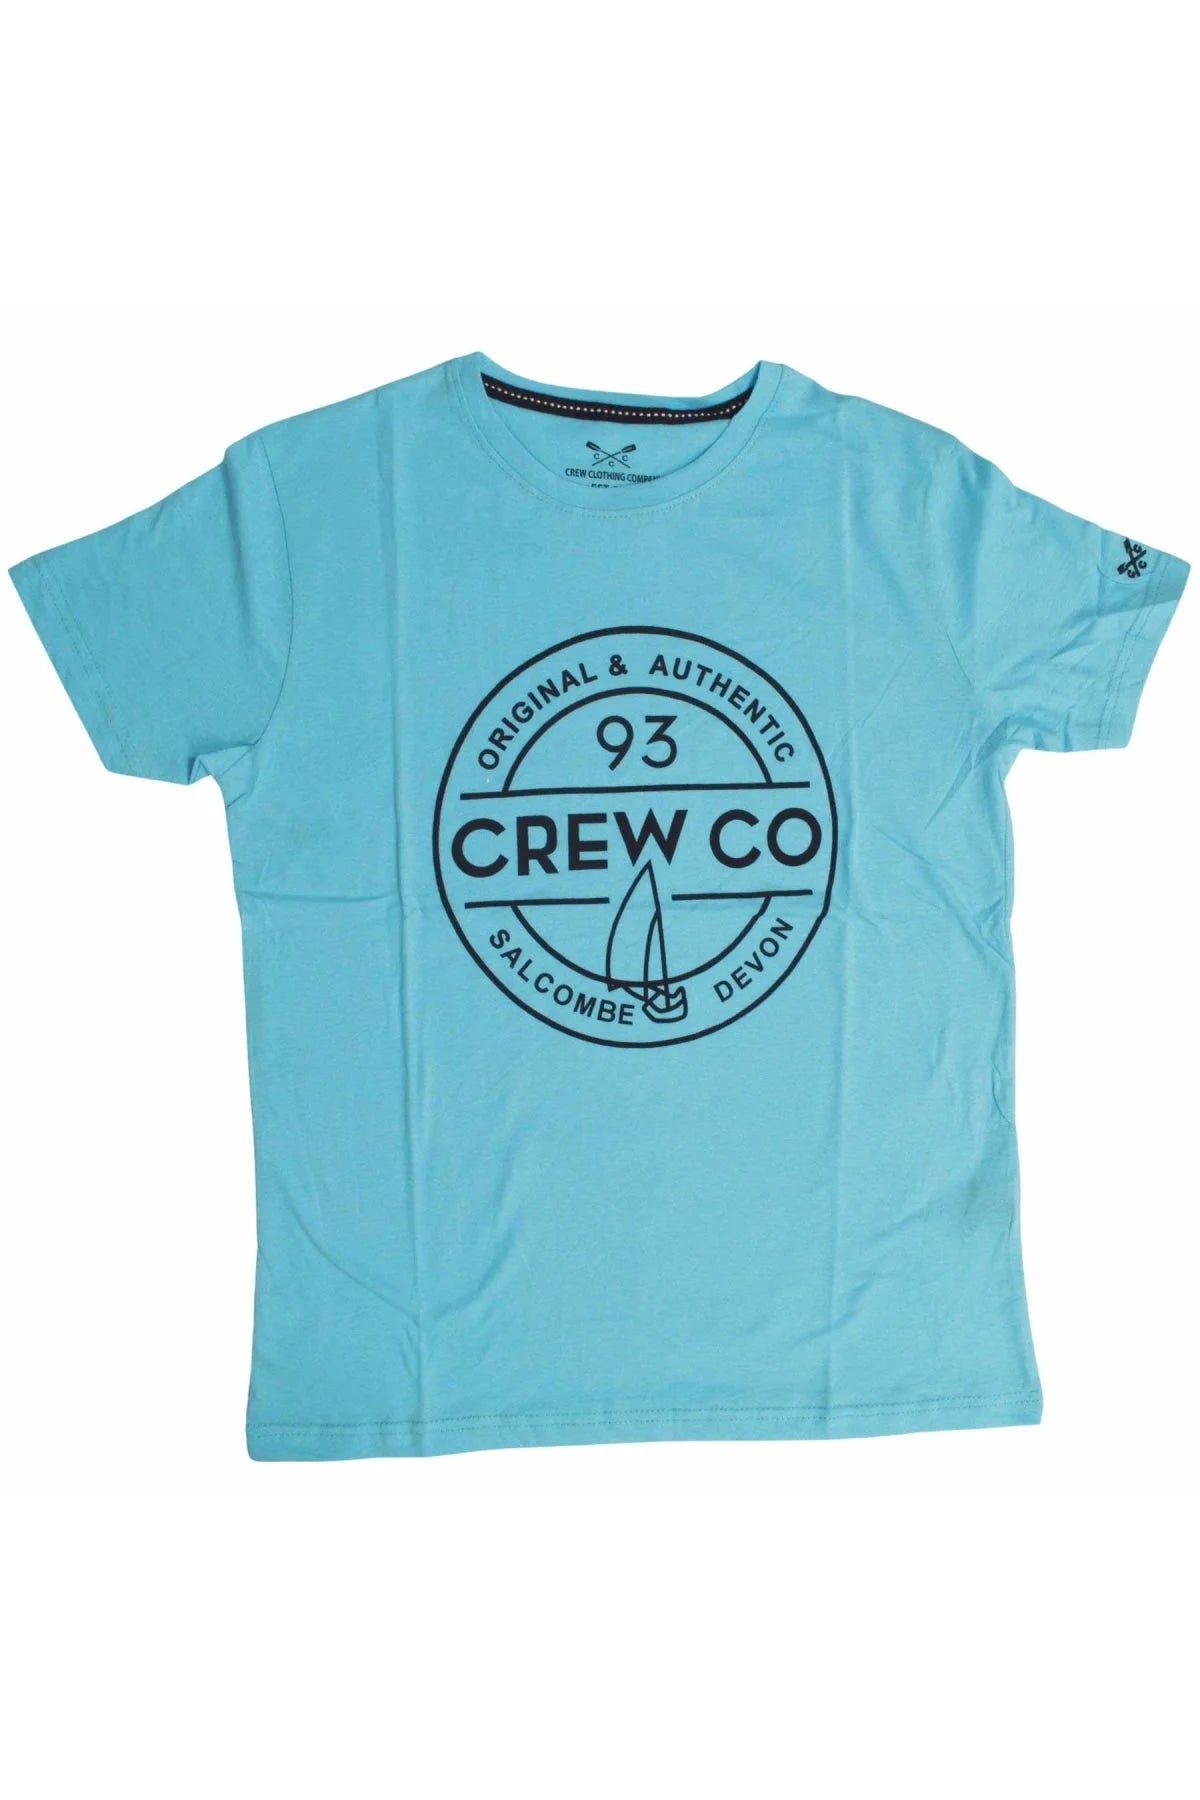 Crew Clothing Logo T Shirts Sky Blue (Original) / S